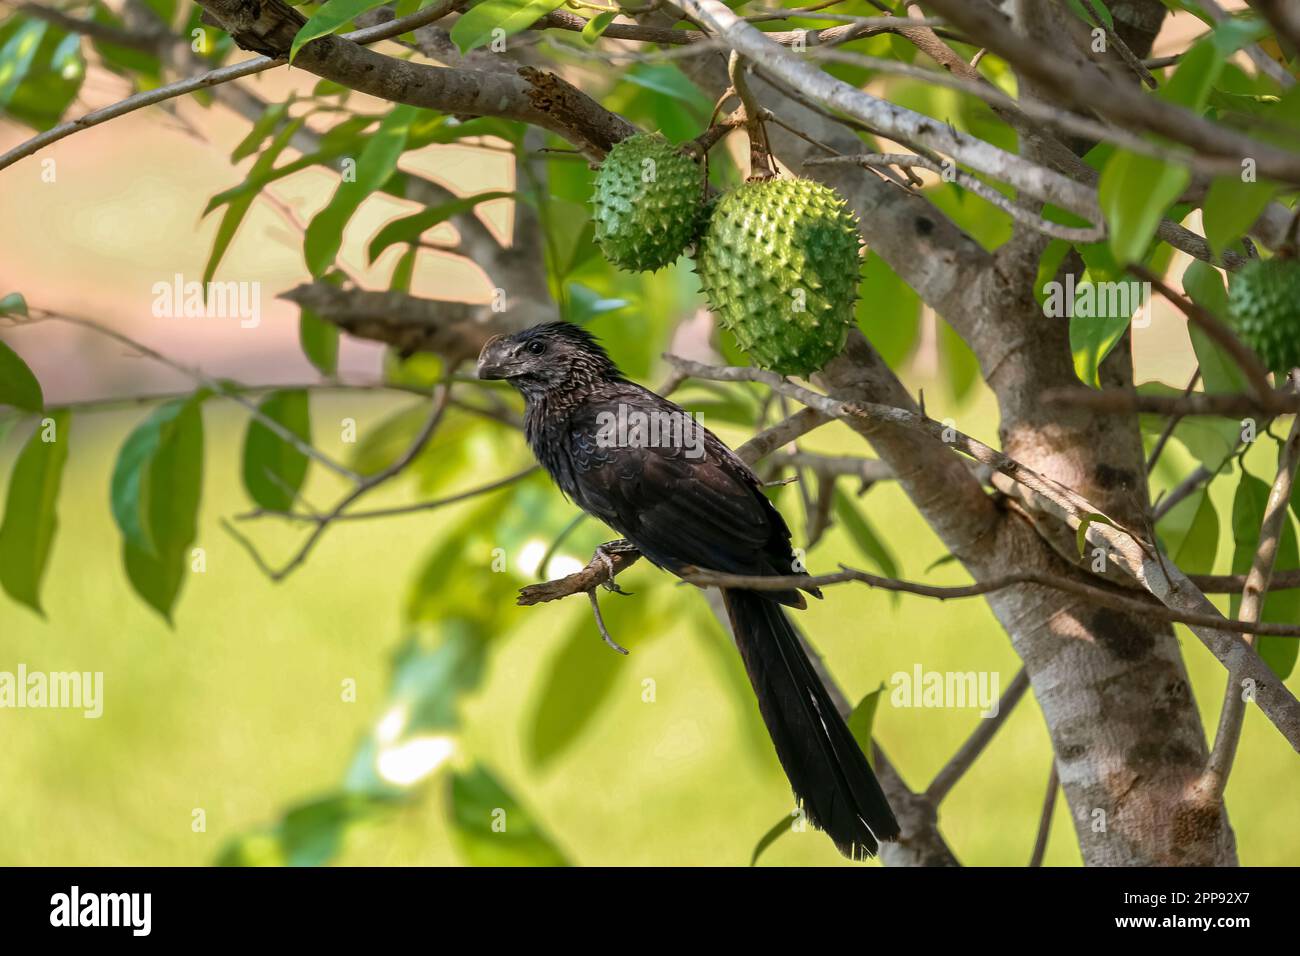 Ani à bec lisse perching sur une petite branche d'un arbre avec des feuilles vertes, BOM Jardim, Mato Grosso, Brésil Banque D'Images